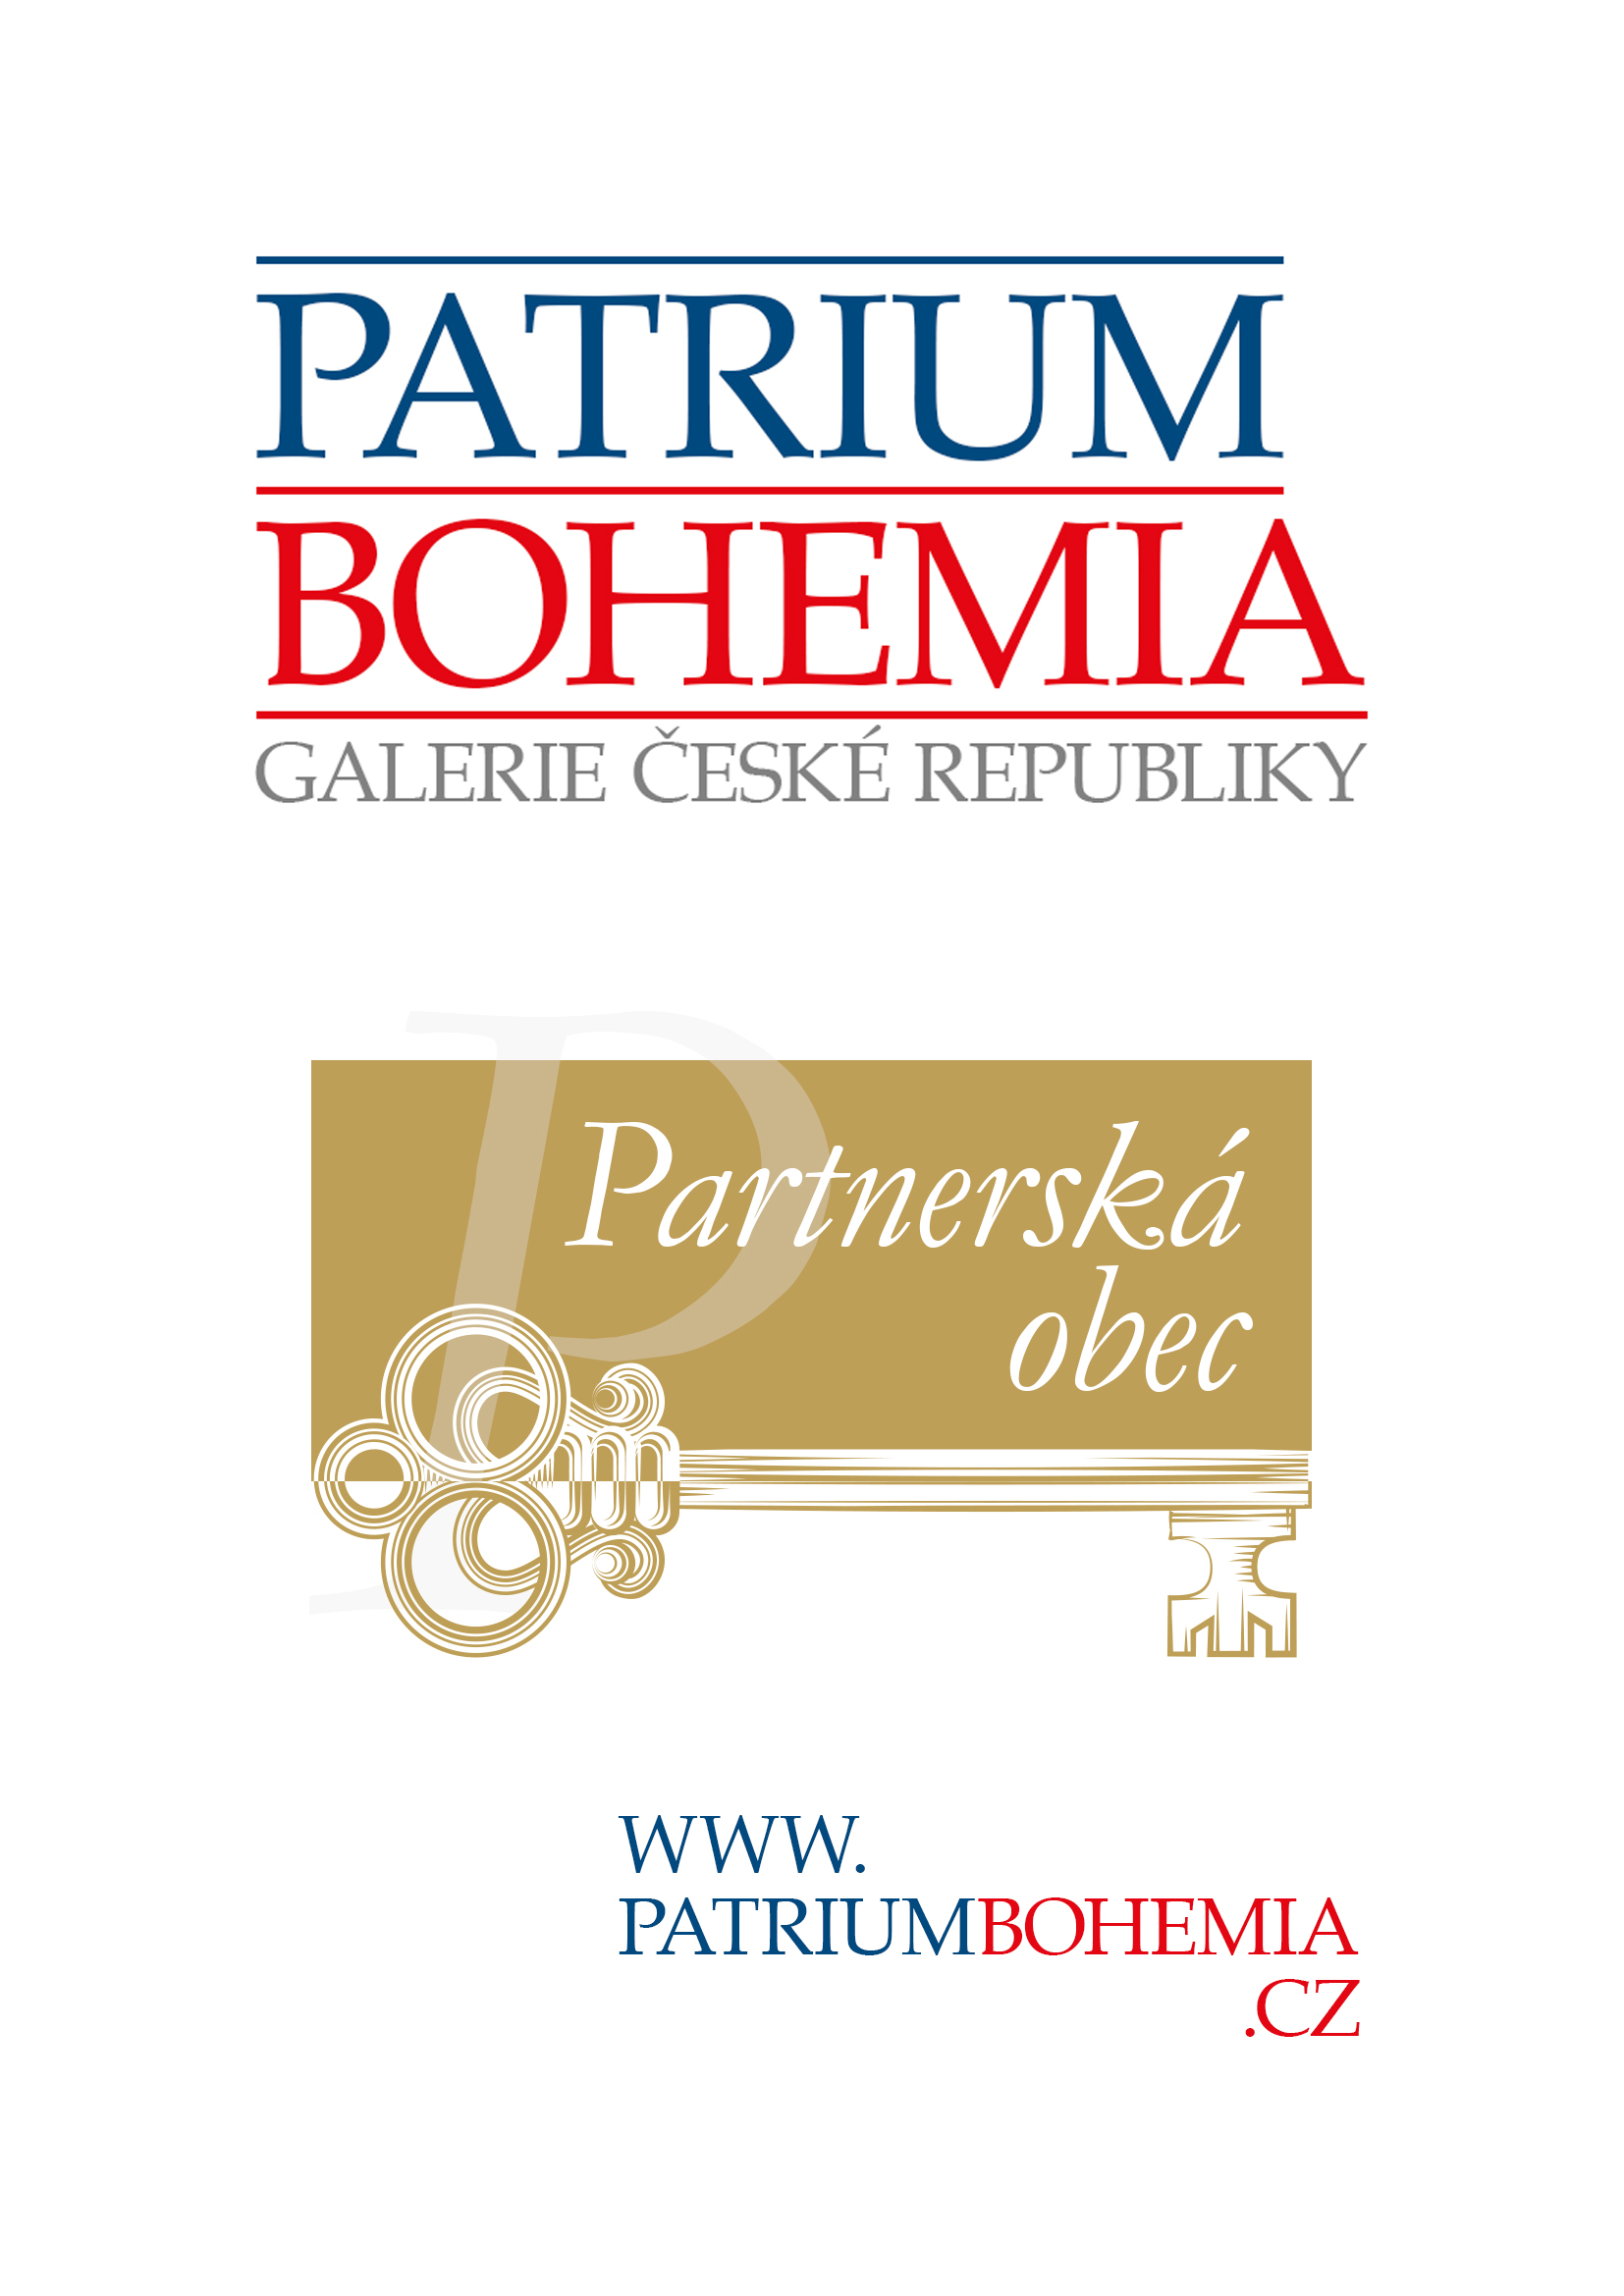 Plakát A4 Patrium Bohemia.